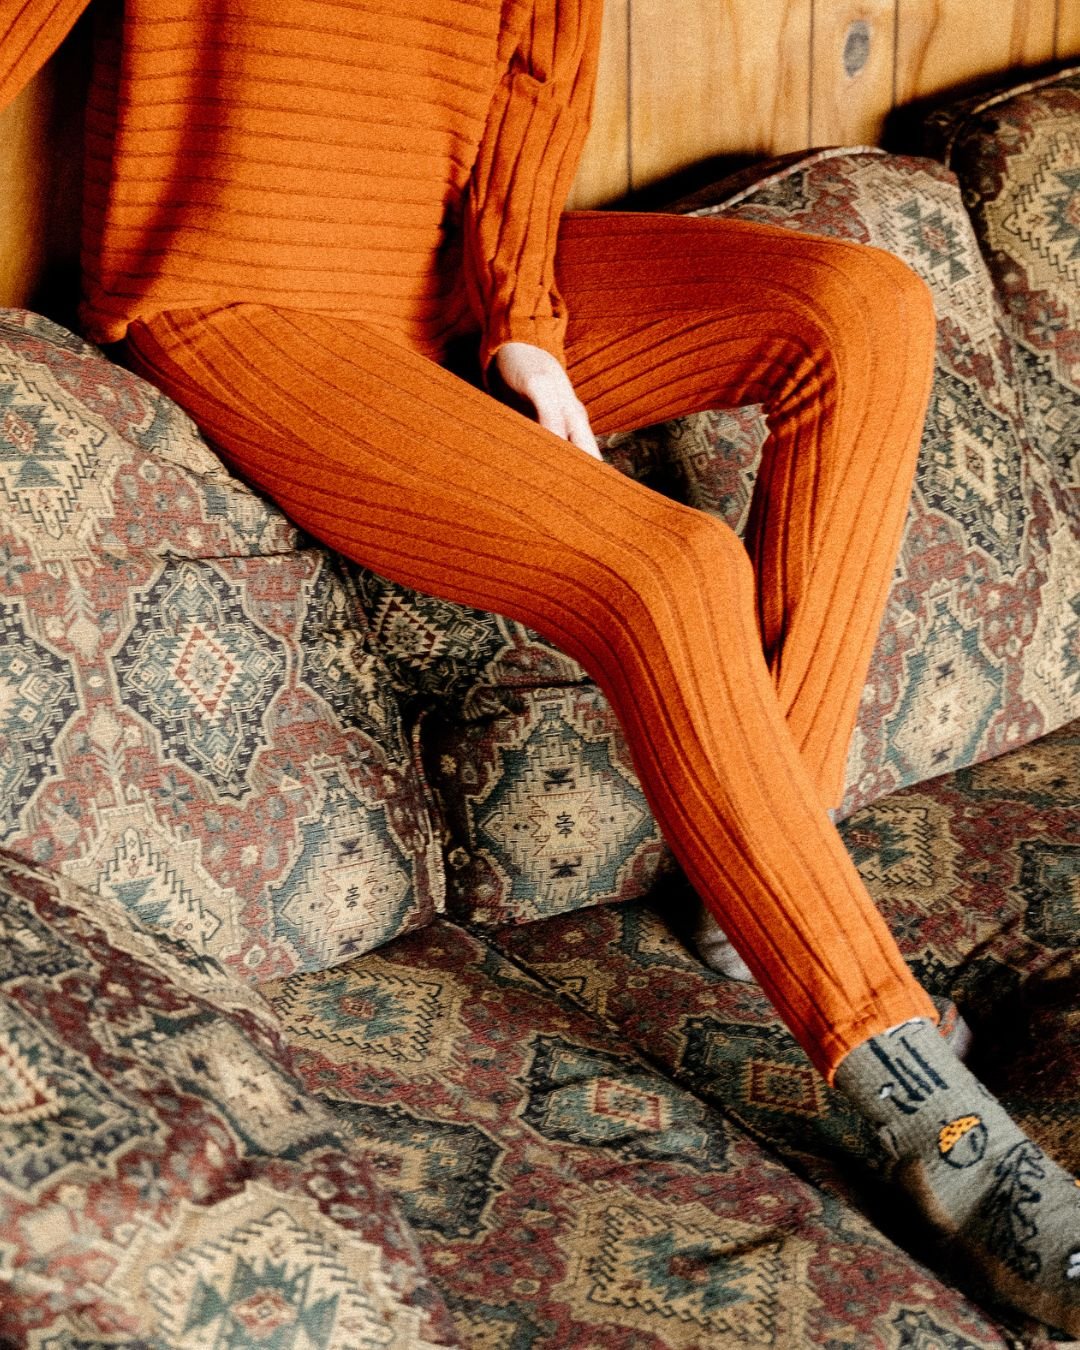 http://seamlesslingerie.com/cdn/shop/products/soft-lounge-ribbed-knit-relaxed-leggingstones-925677.jpg?v=1704306309